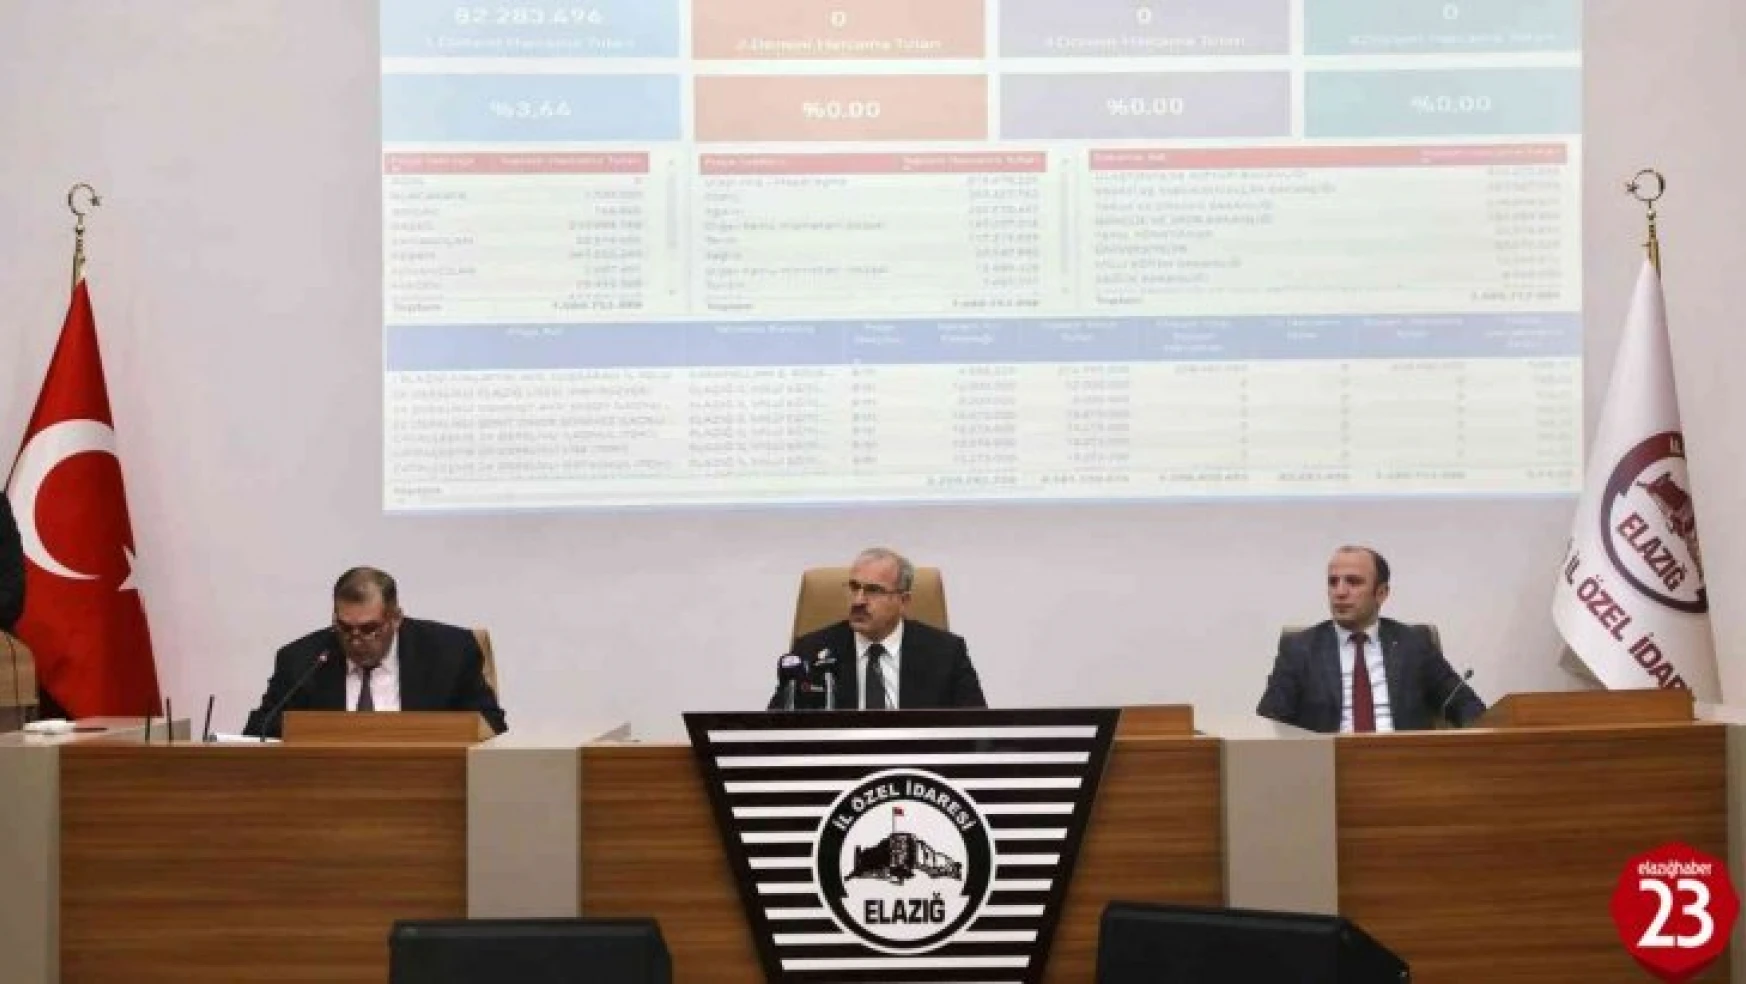 Elazığ'da il koordinasyon kurulu toplantısı gerçekleştirildi